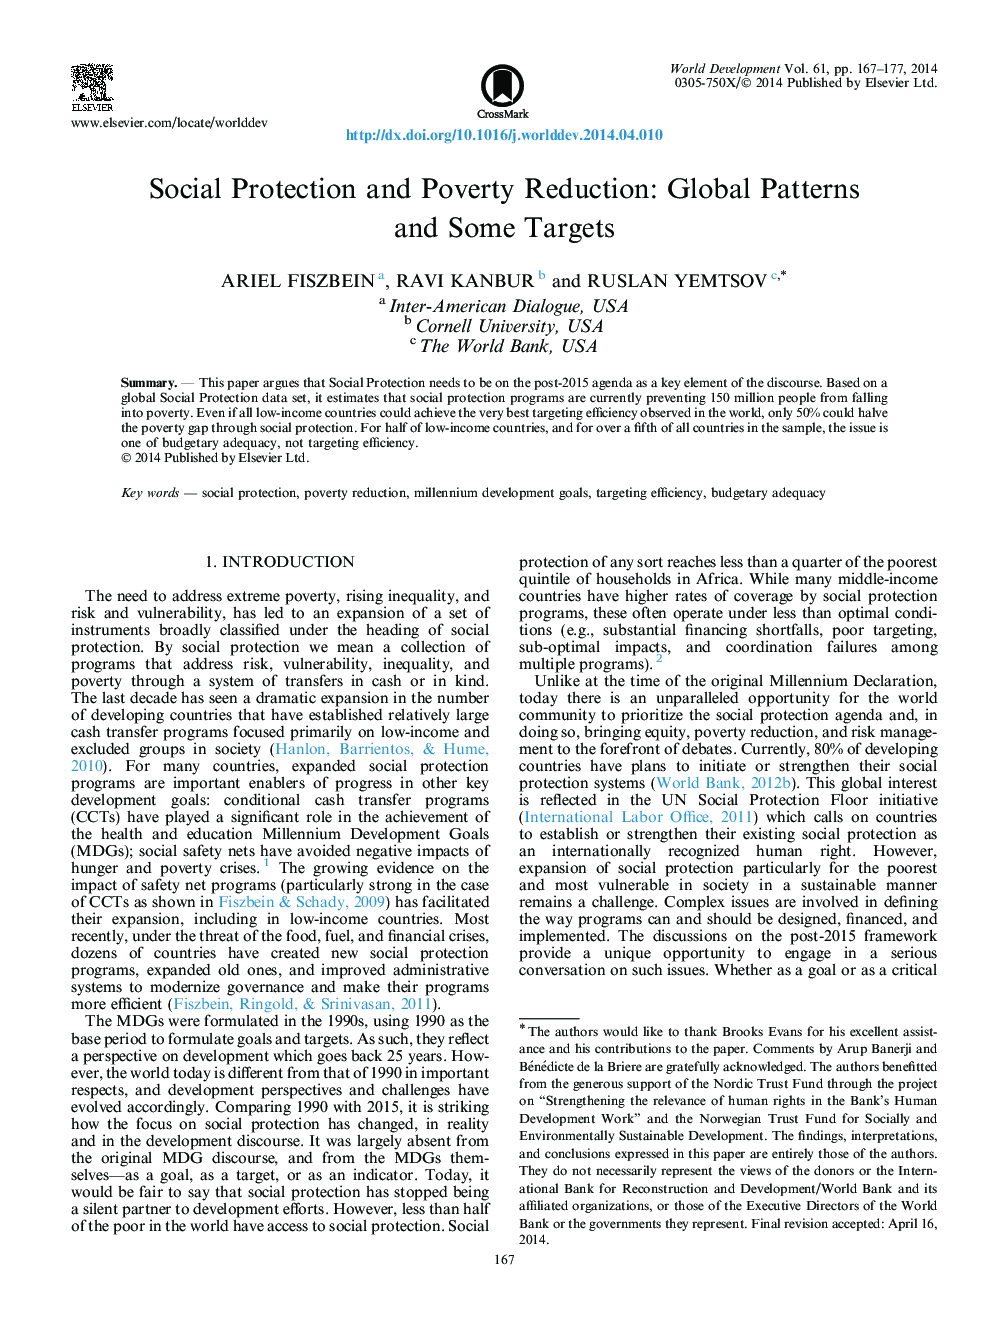 حمایت اجتماعی و کاهش فقر: الگوی جهانی و برخی اهداف 